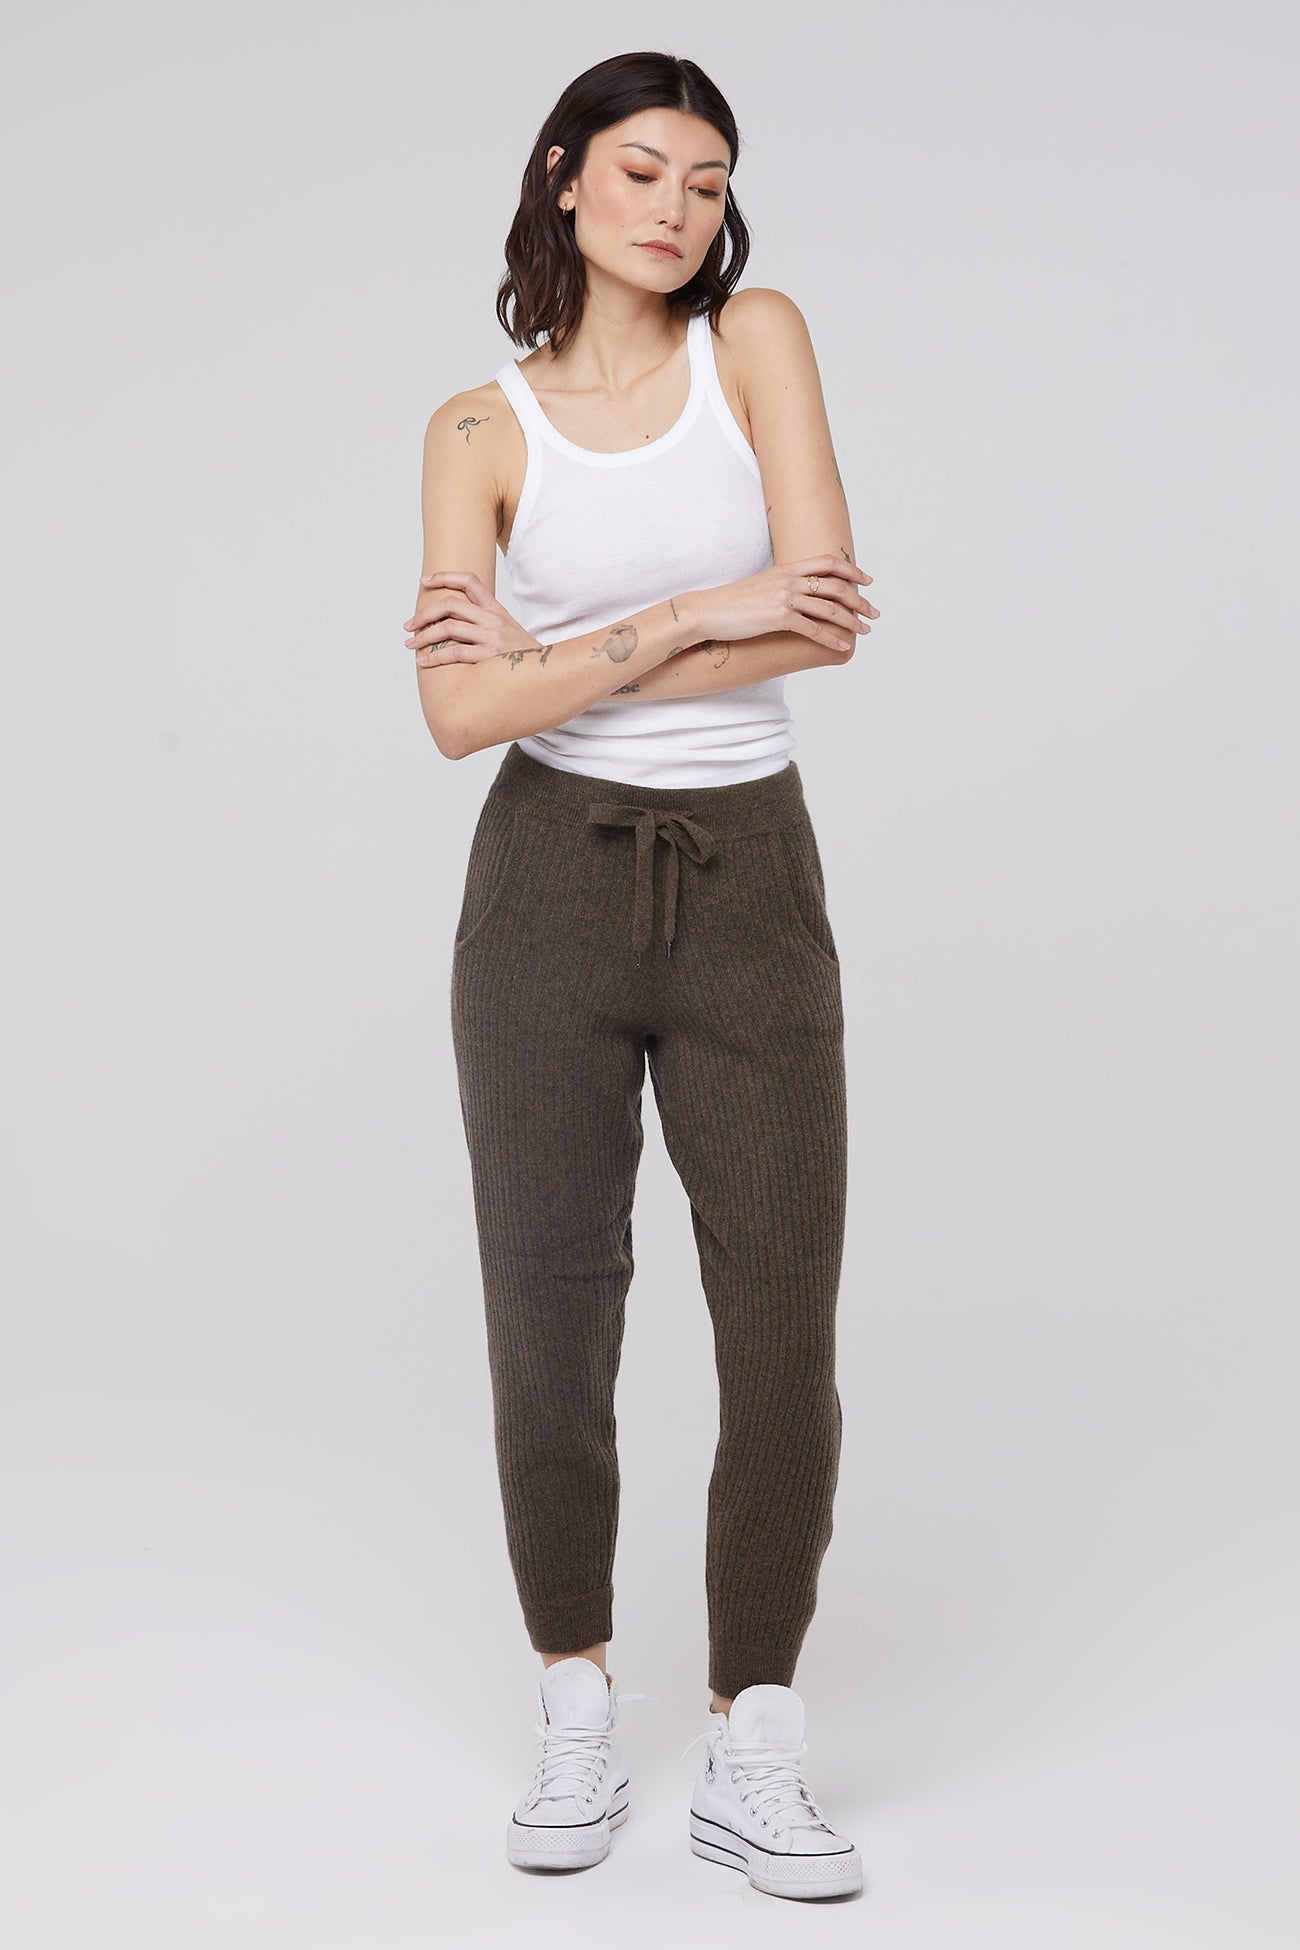 Citizen Cashmere Lounge Pants Women - Pure Cashmere with